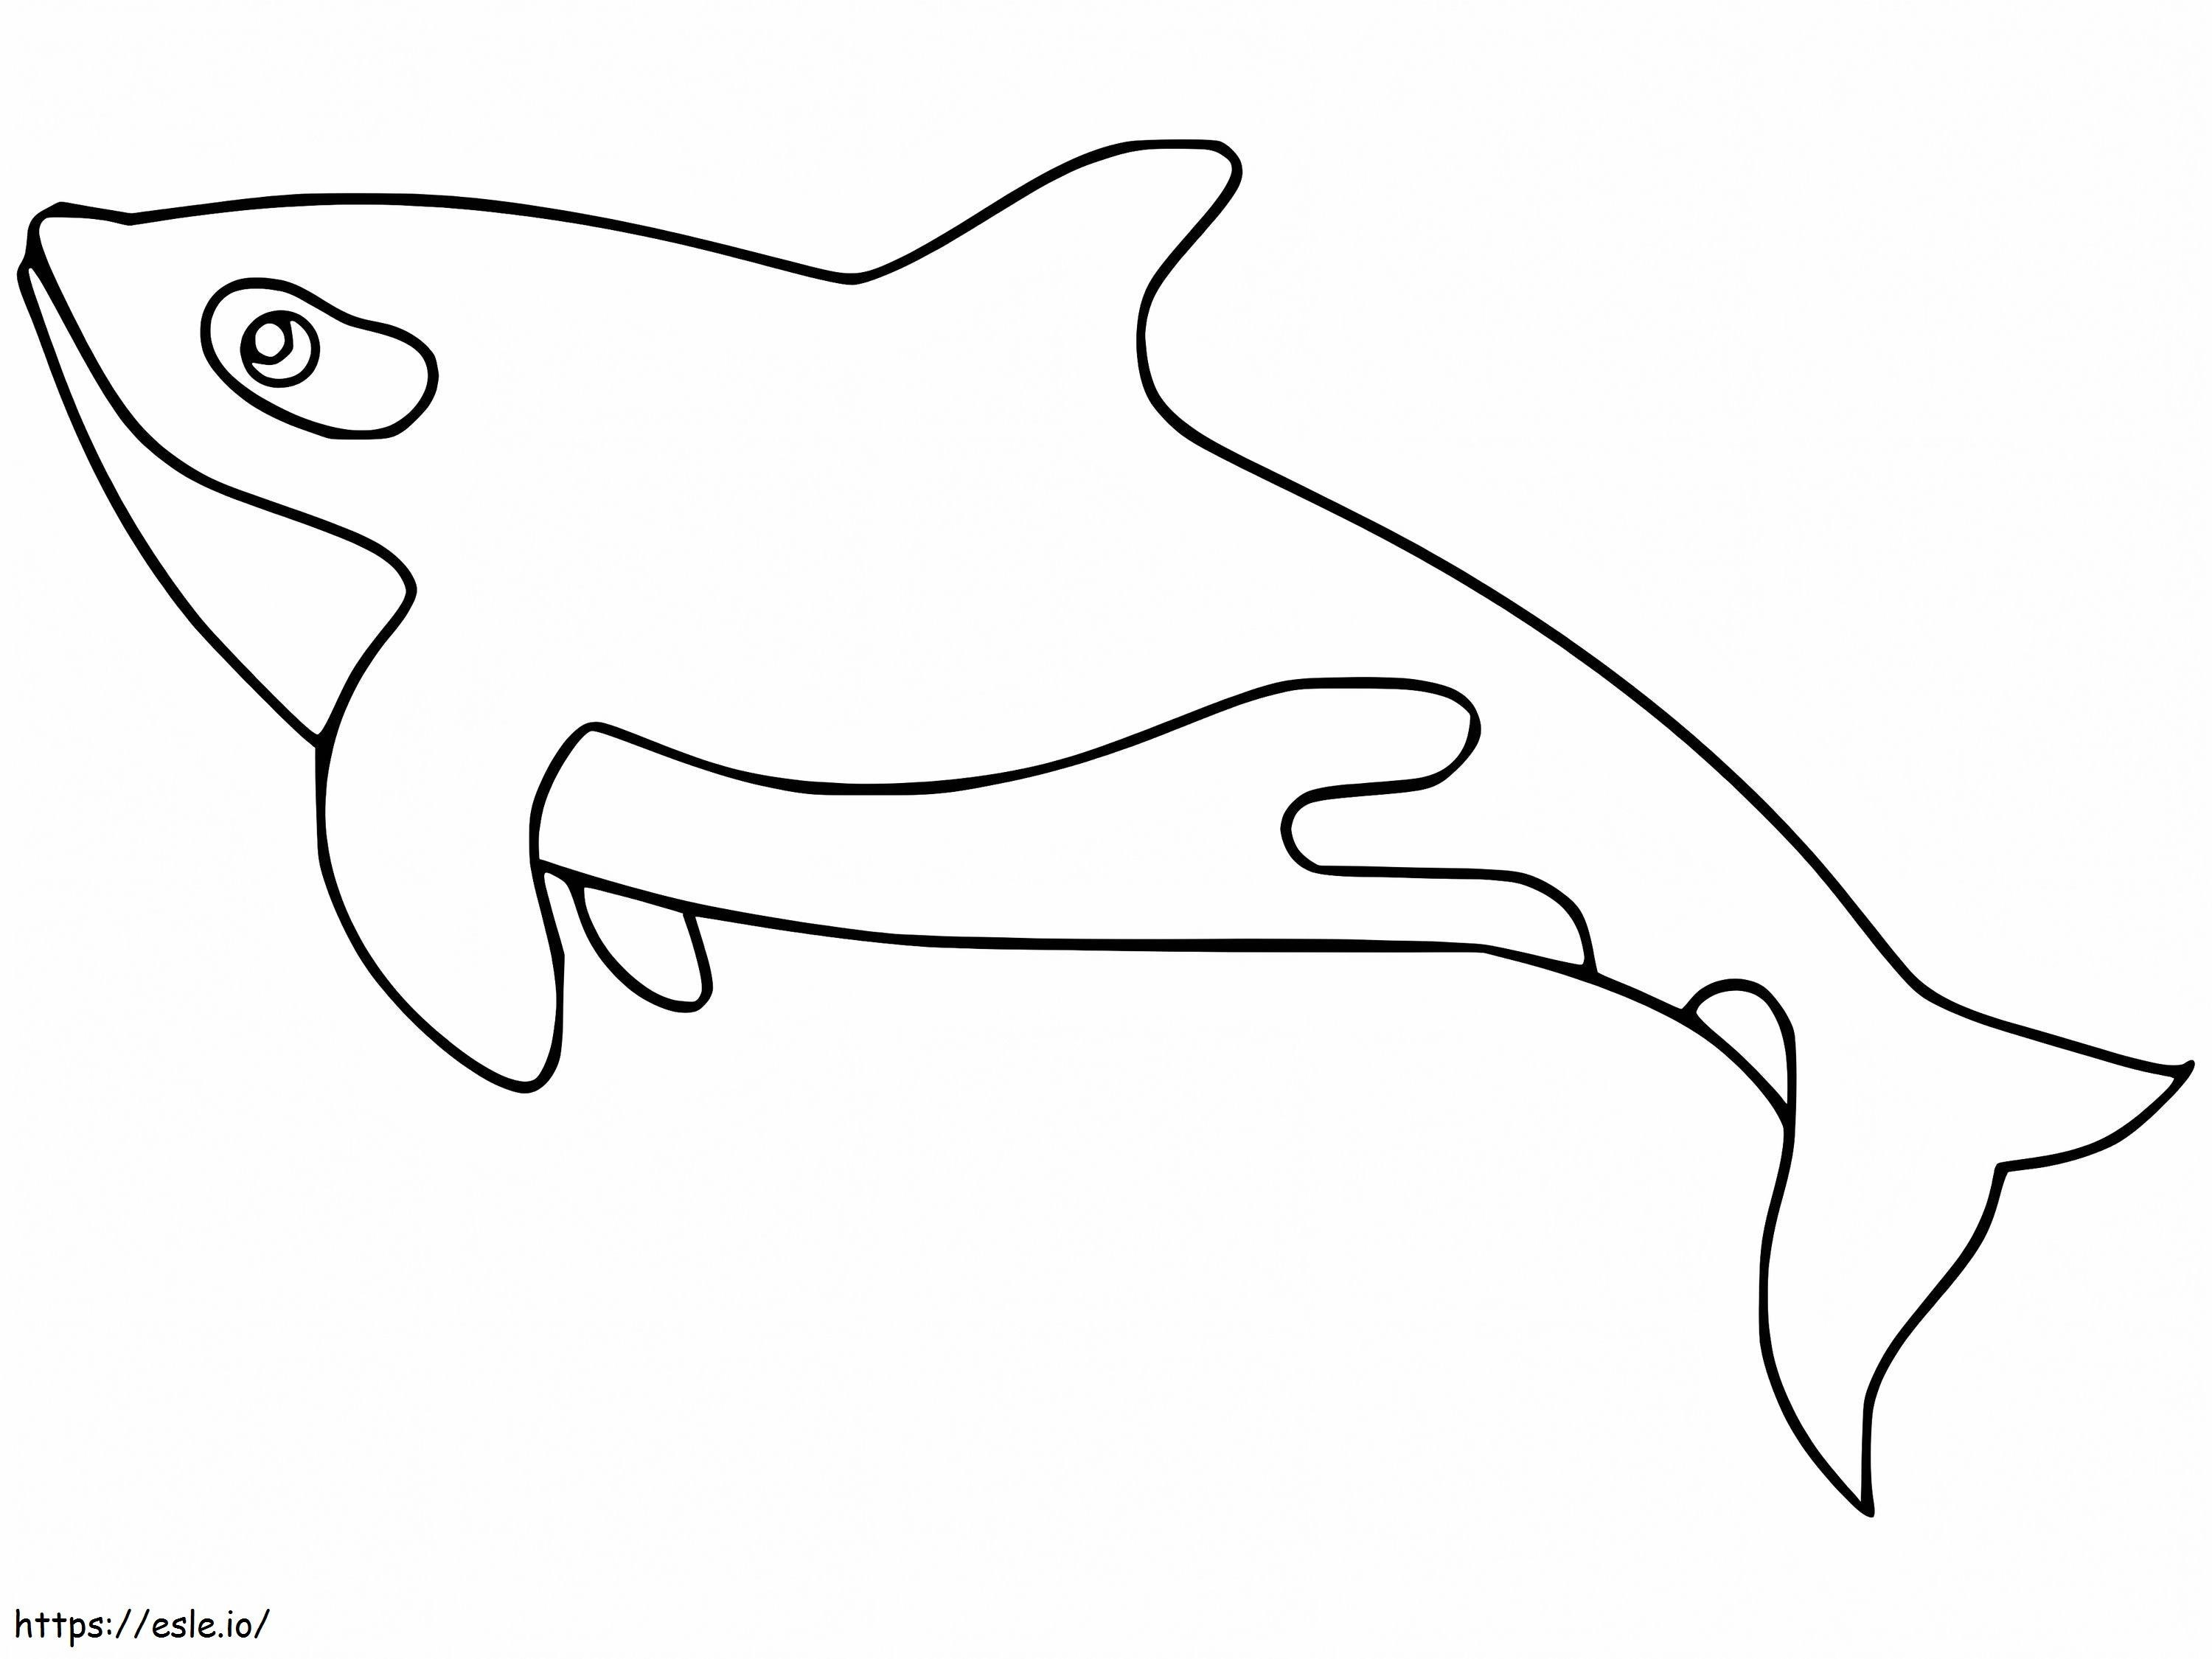 Druckbarer Orca-Wal ausmalbilder